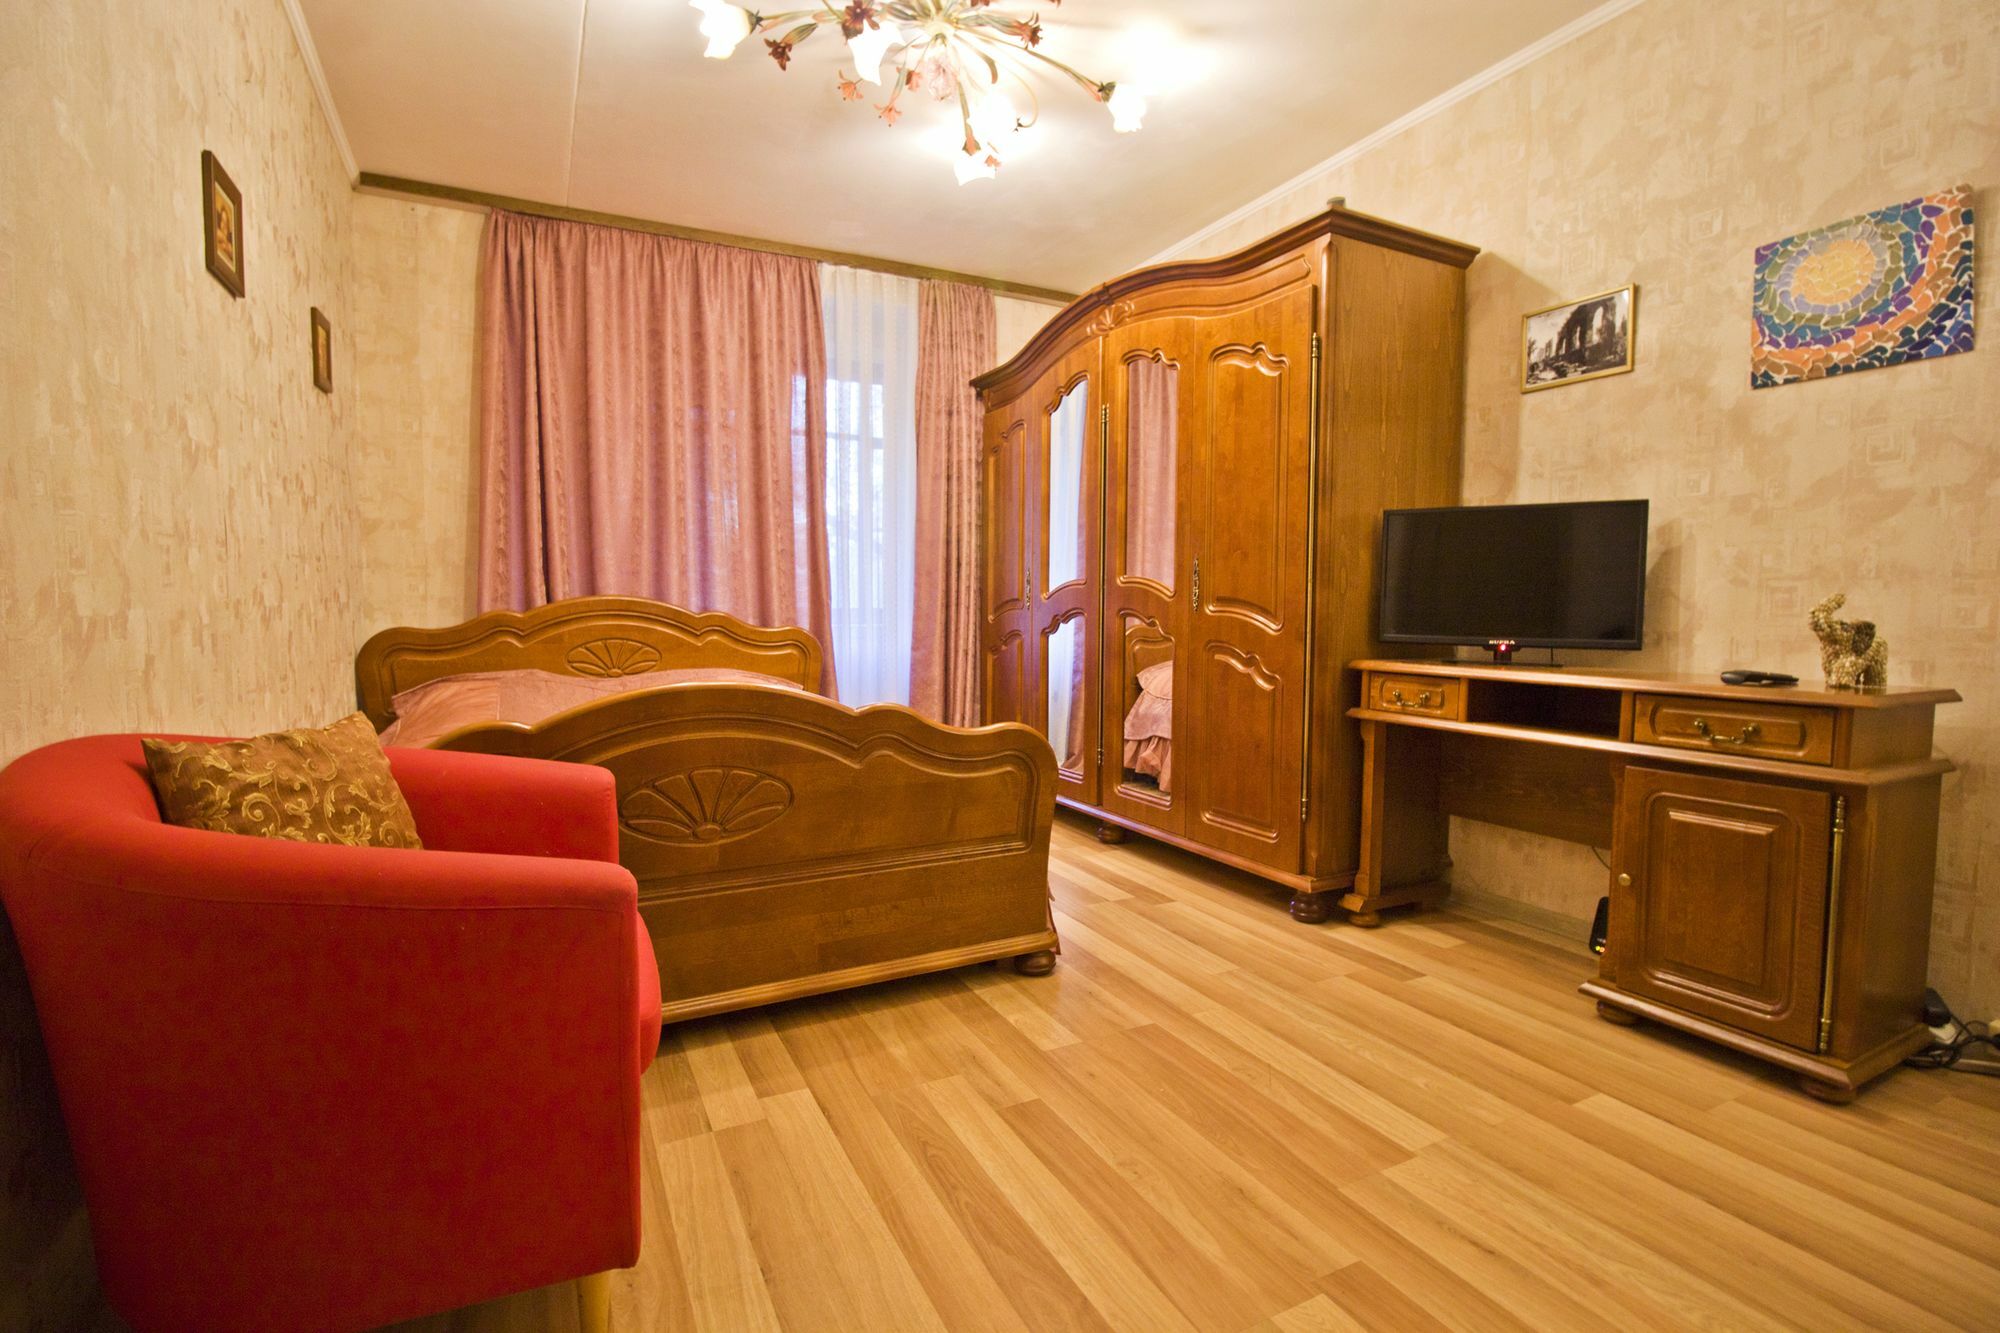 Снять квартиру в москве посуточно вднх недорого. Апартаменты гостиница ВДНХ. ВДНХ квартиры. ВДНХ квартиры купить.